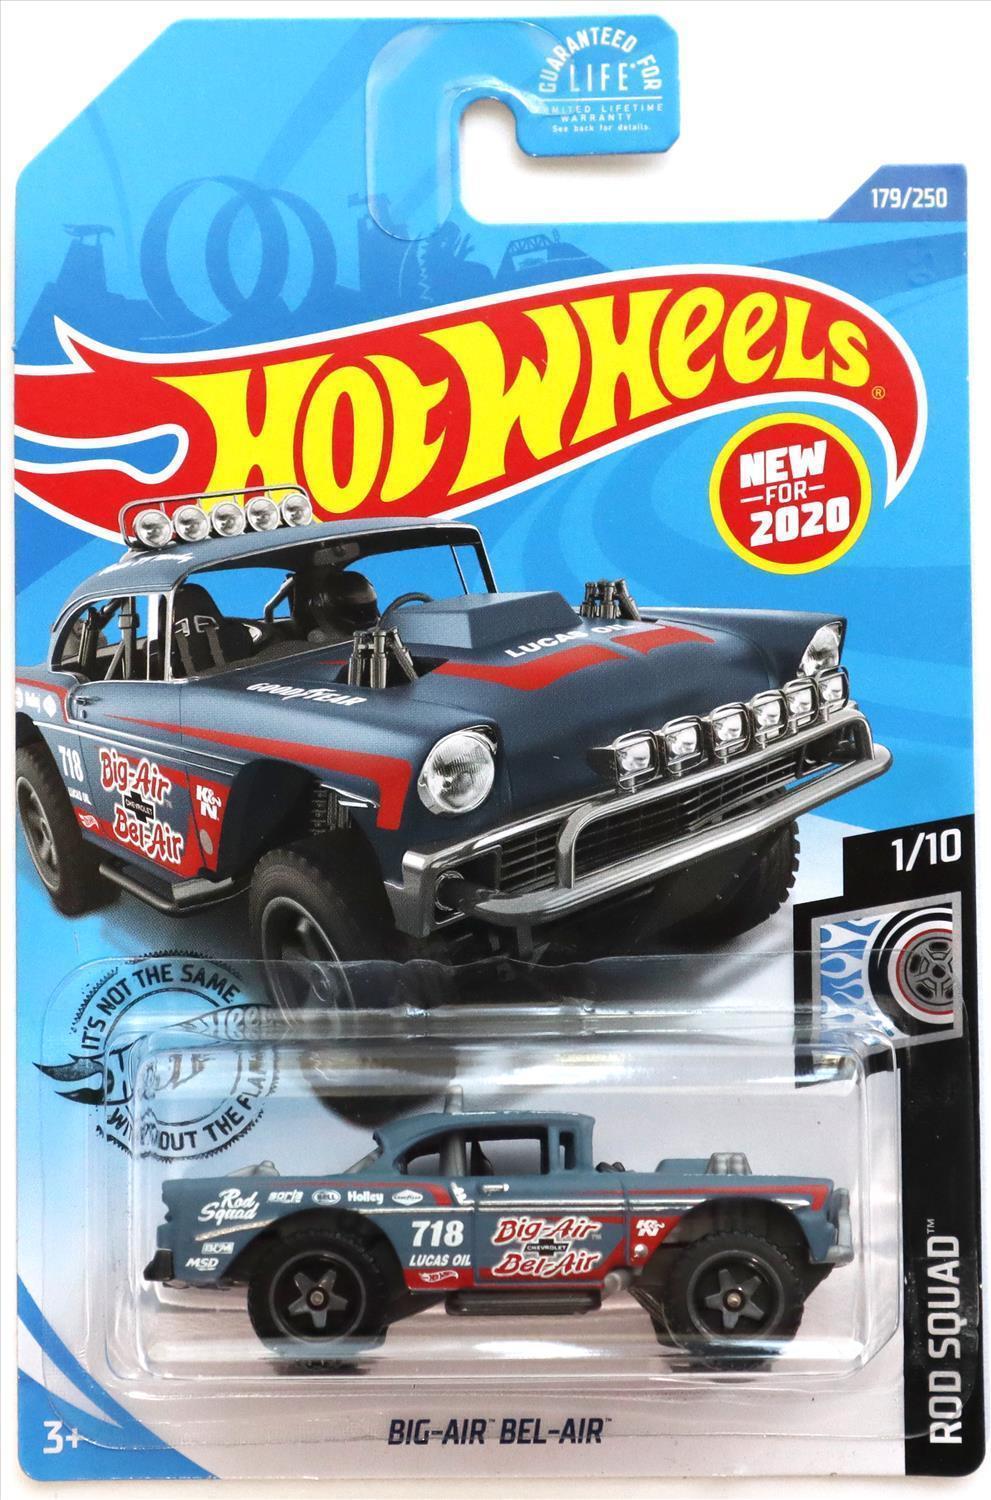 Hot Wheels 2020 - Collector # 179/250 - Rod Squad 1/10 - New Models - Big-Air Bel-Air - Blue Gray